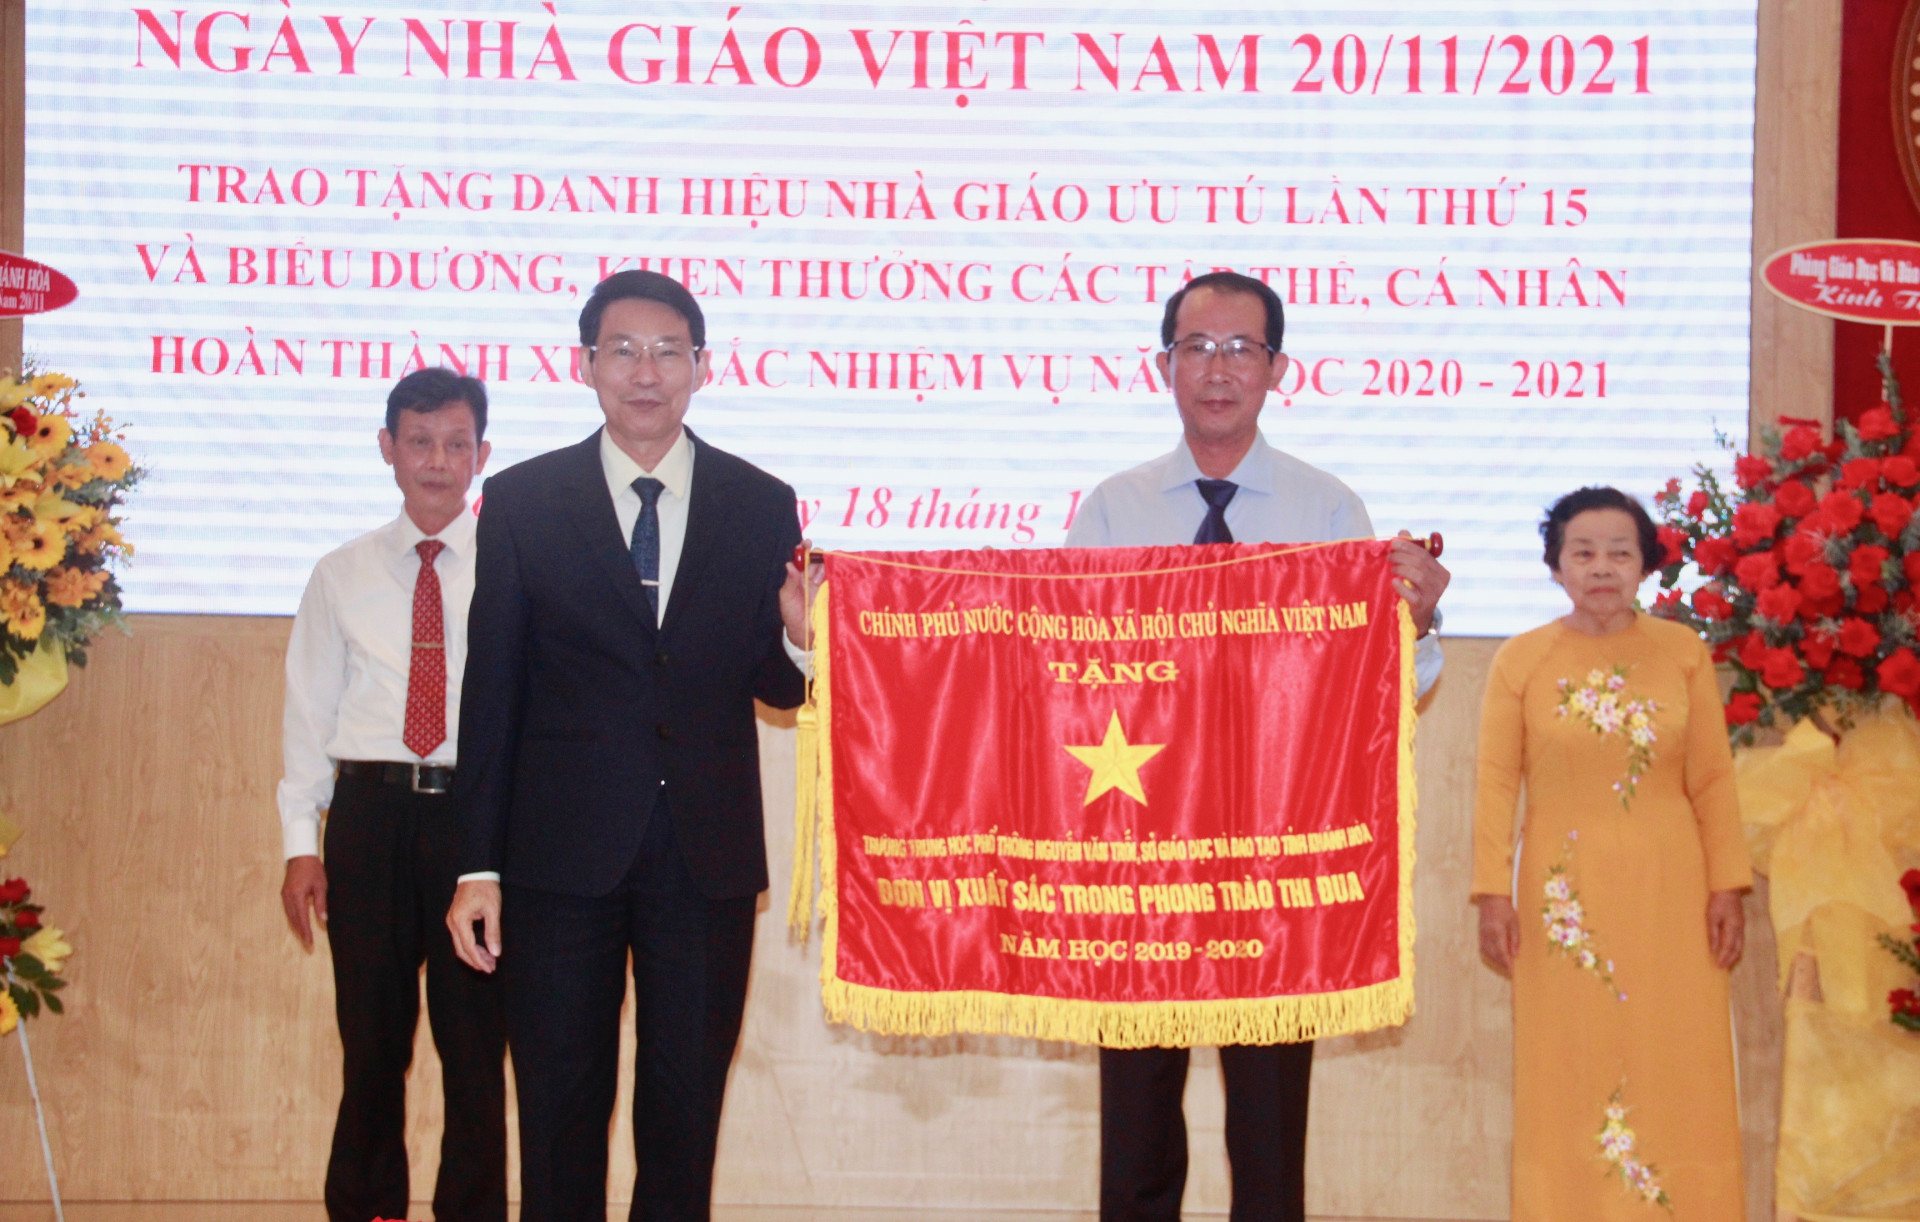 Trao tặng cờ thi đua của Chính phủ cho Trường THPT Nguyễn Văn Trỗi